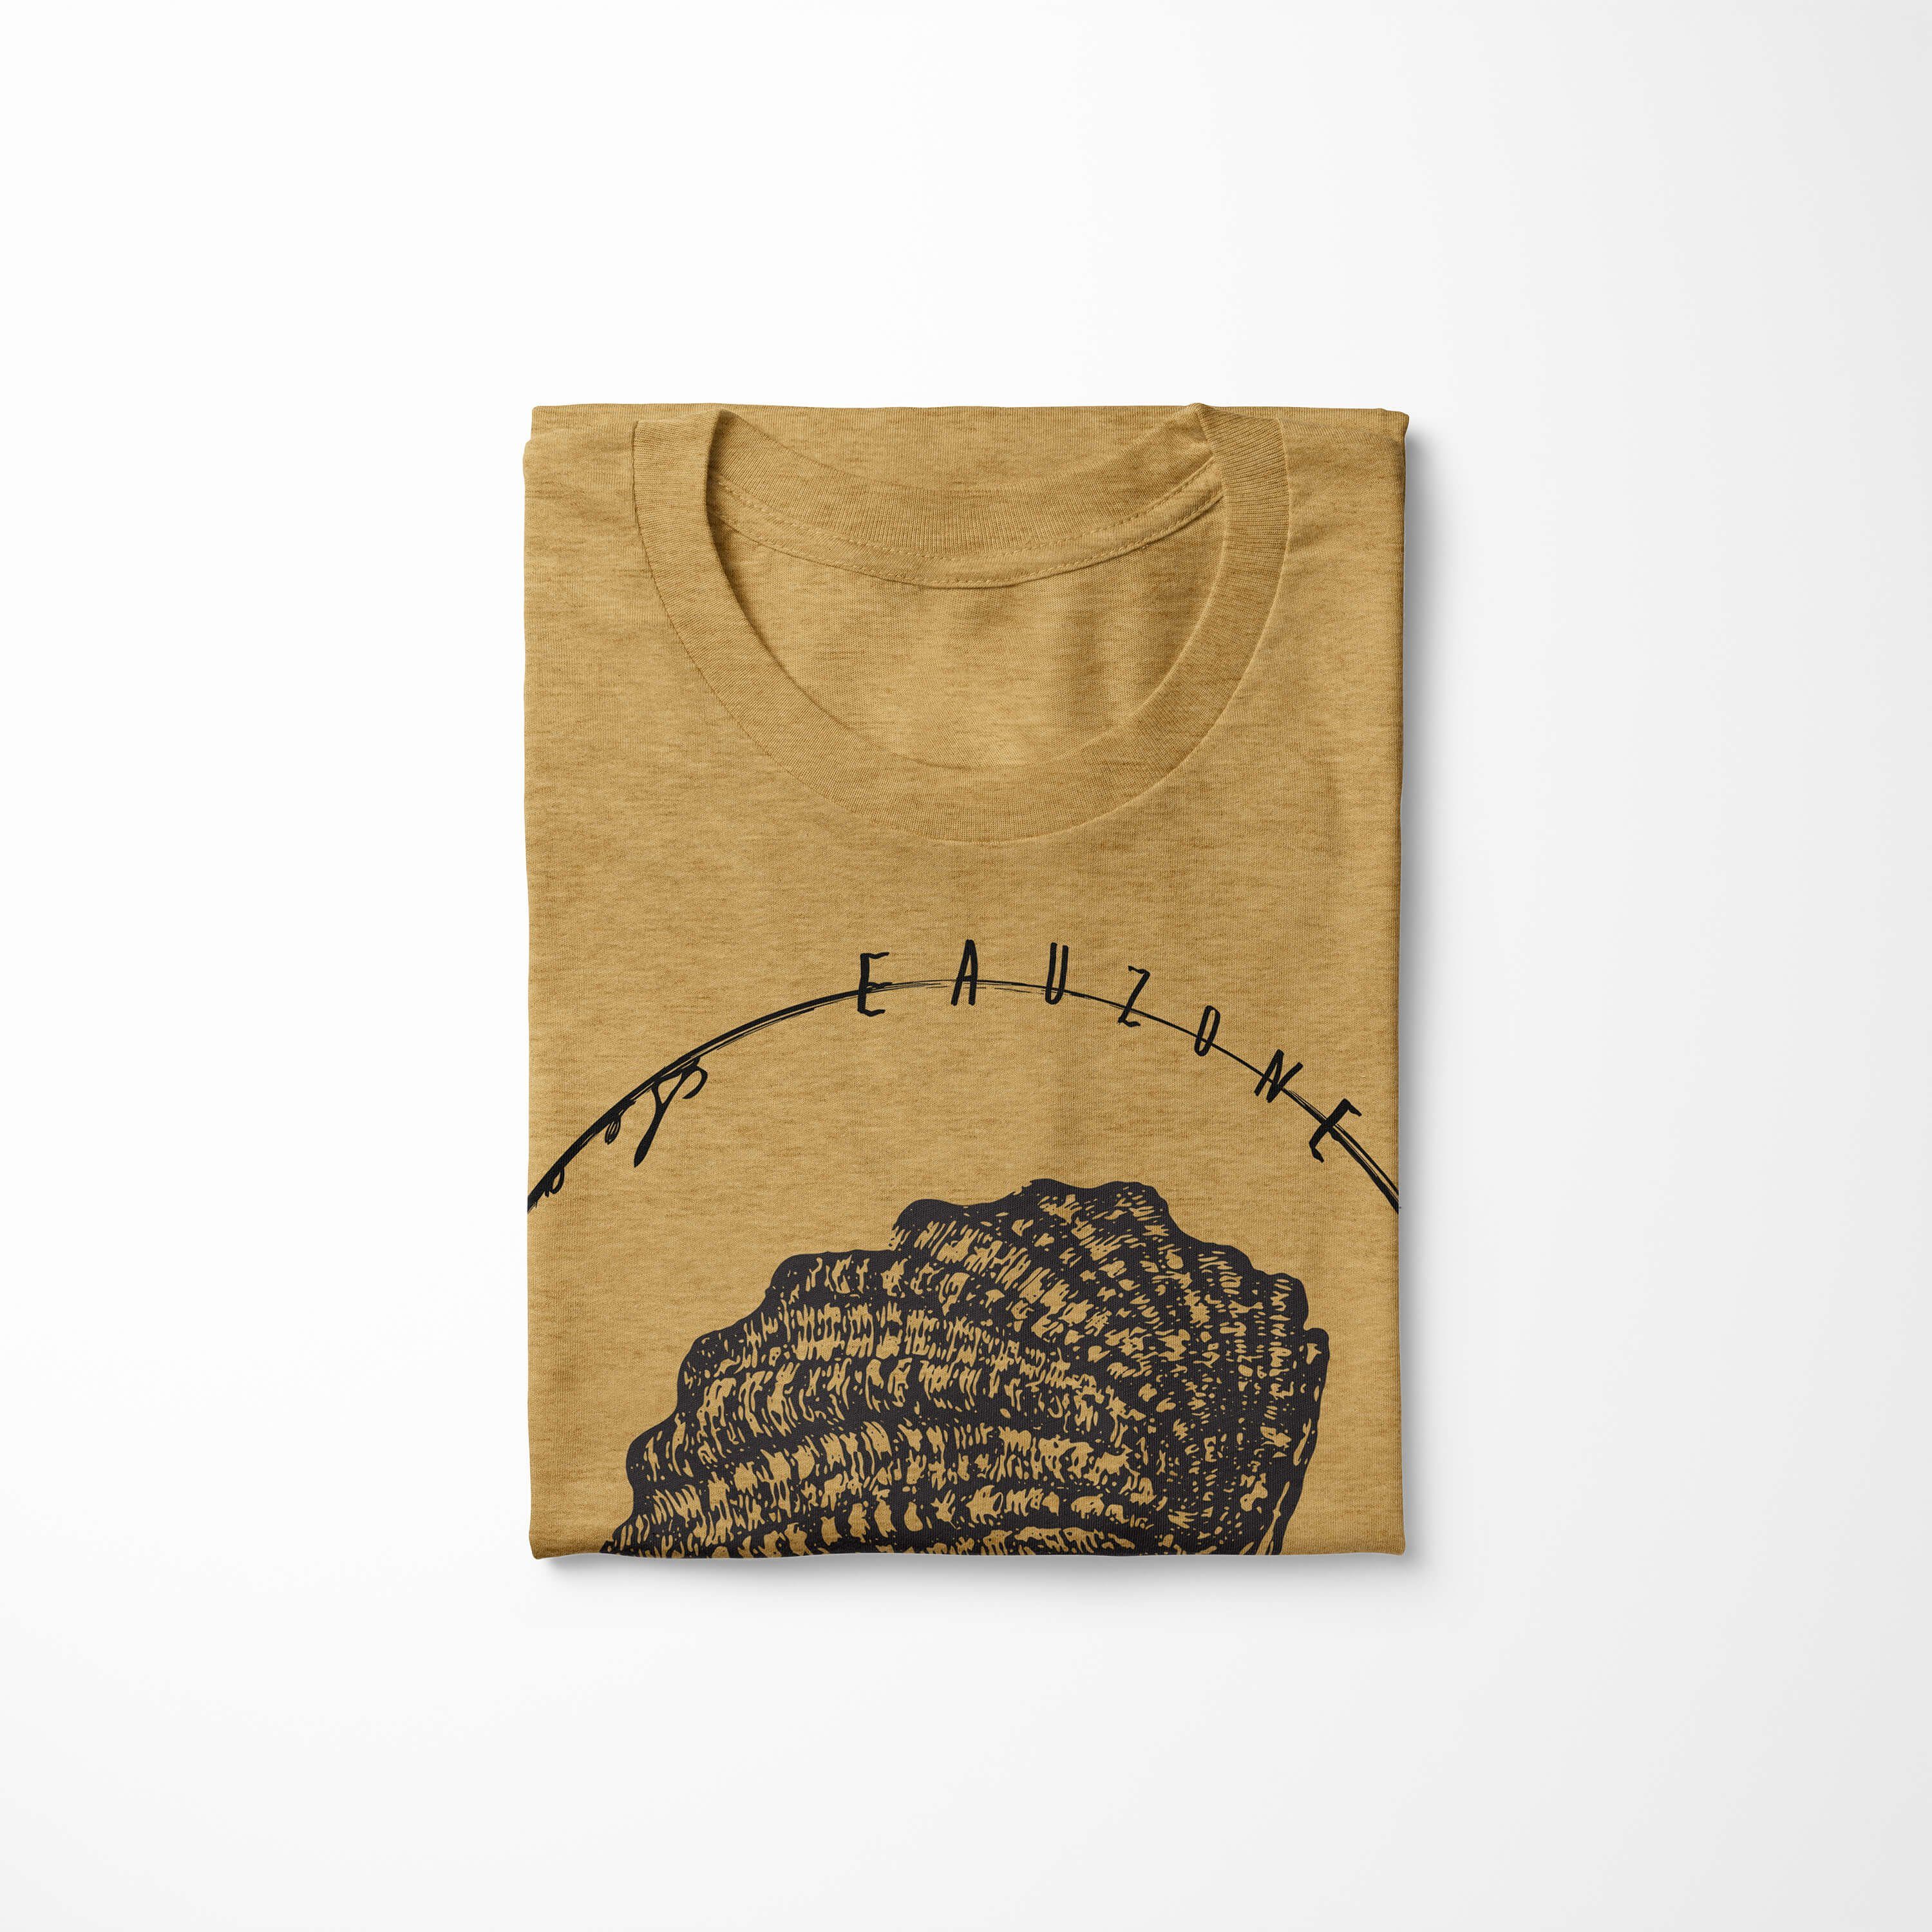 T-Shirt Serie: Sinus Schnitt / sportlicher und Gold Antique Sea 067 Art Tiefsee Creatures, Sea - feine Struktur T-Shirt Fische